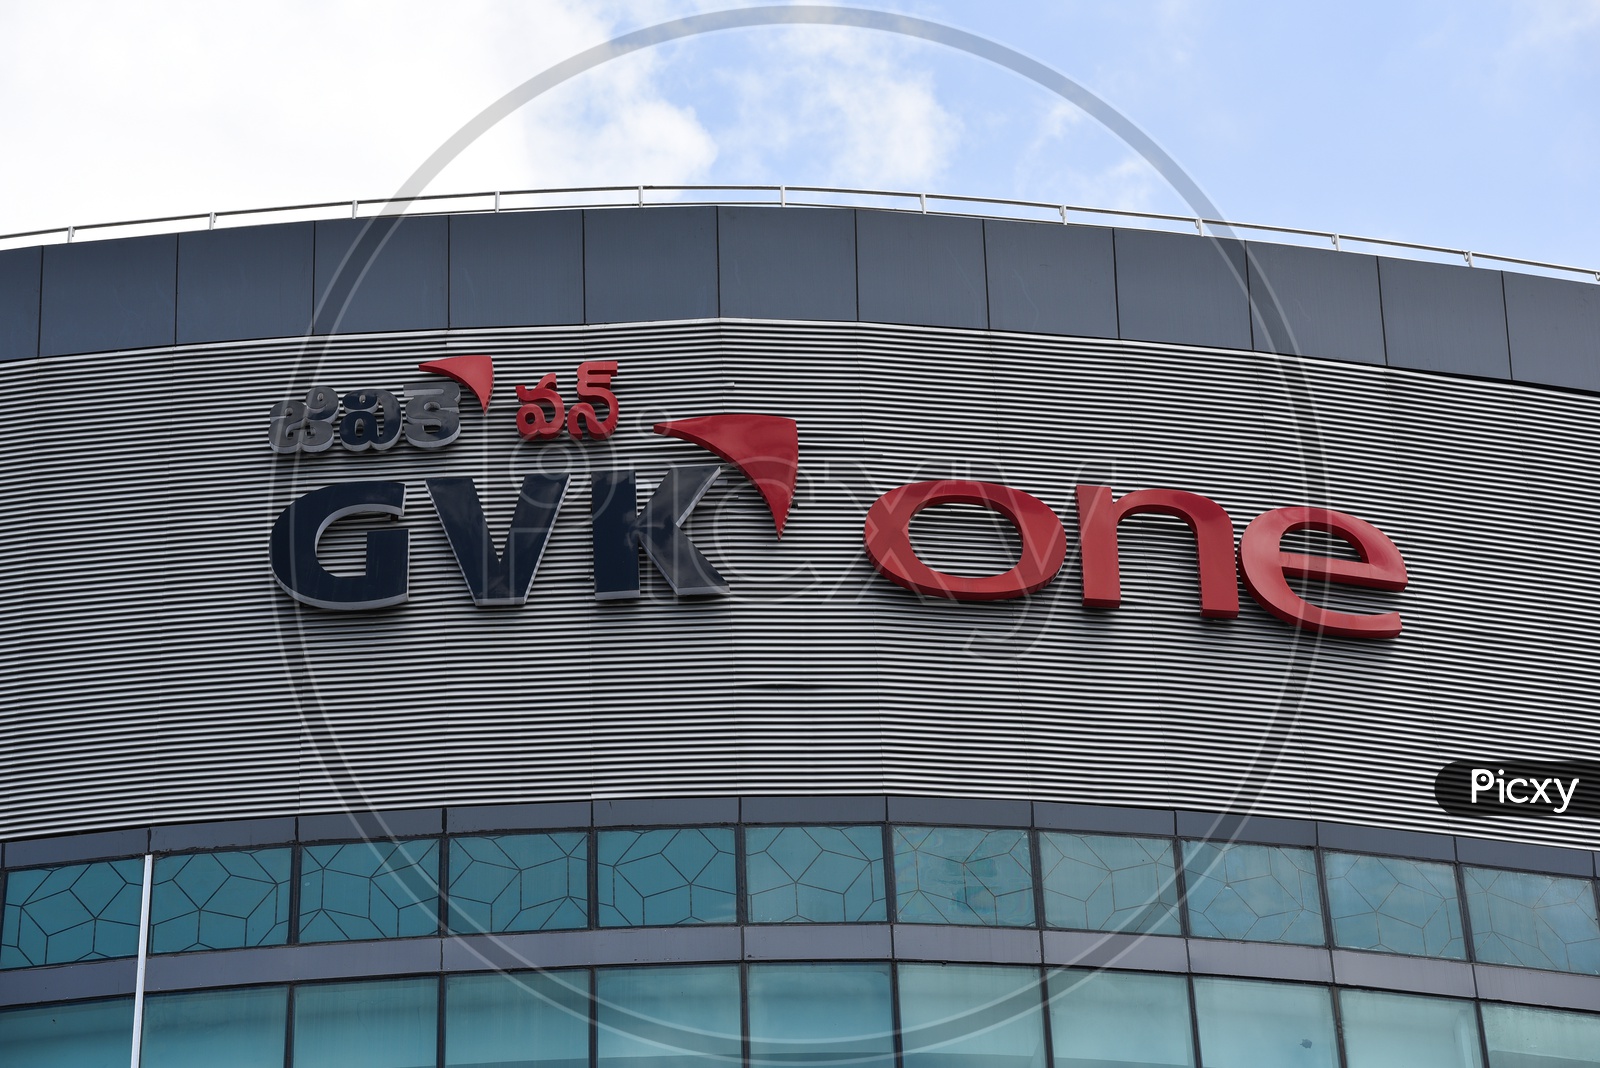 GVK One Mall Name On Mall Facade